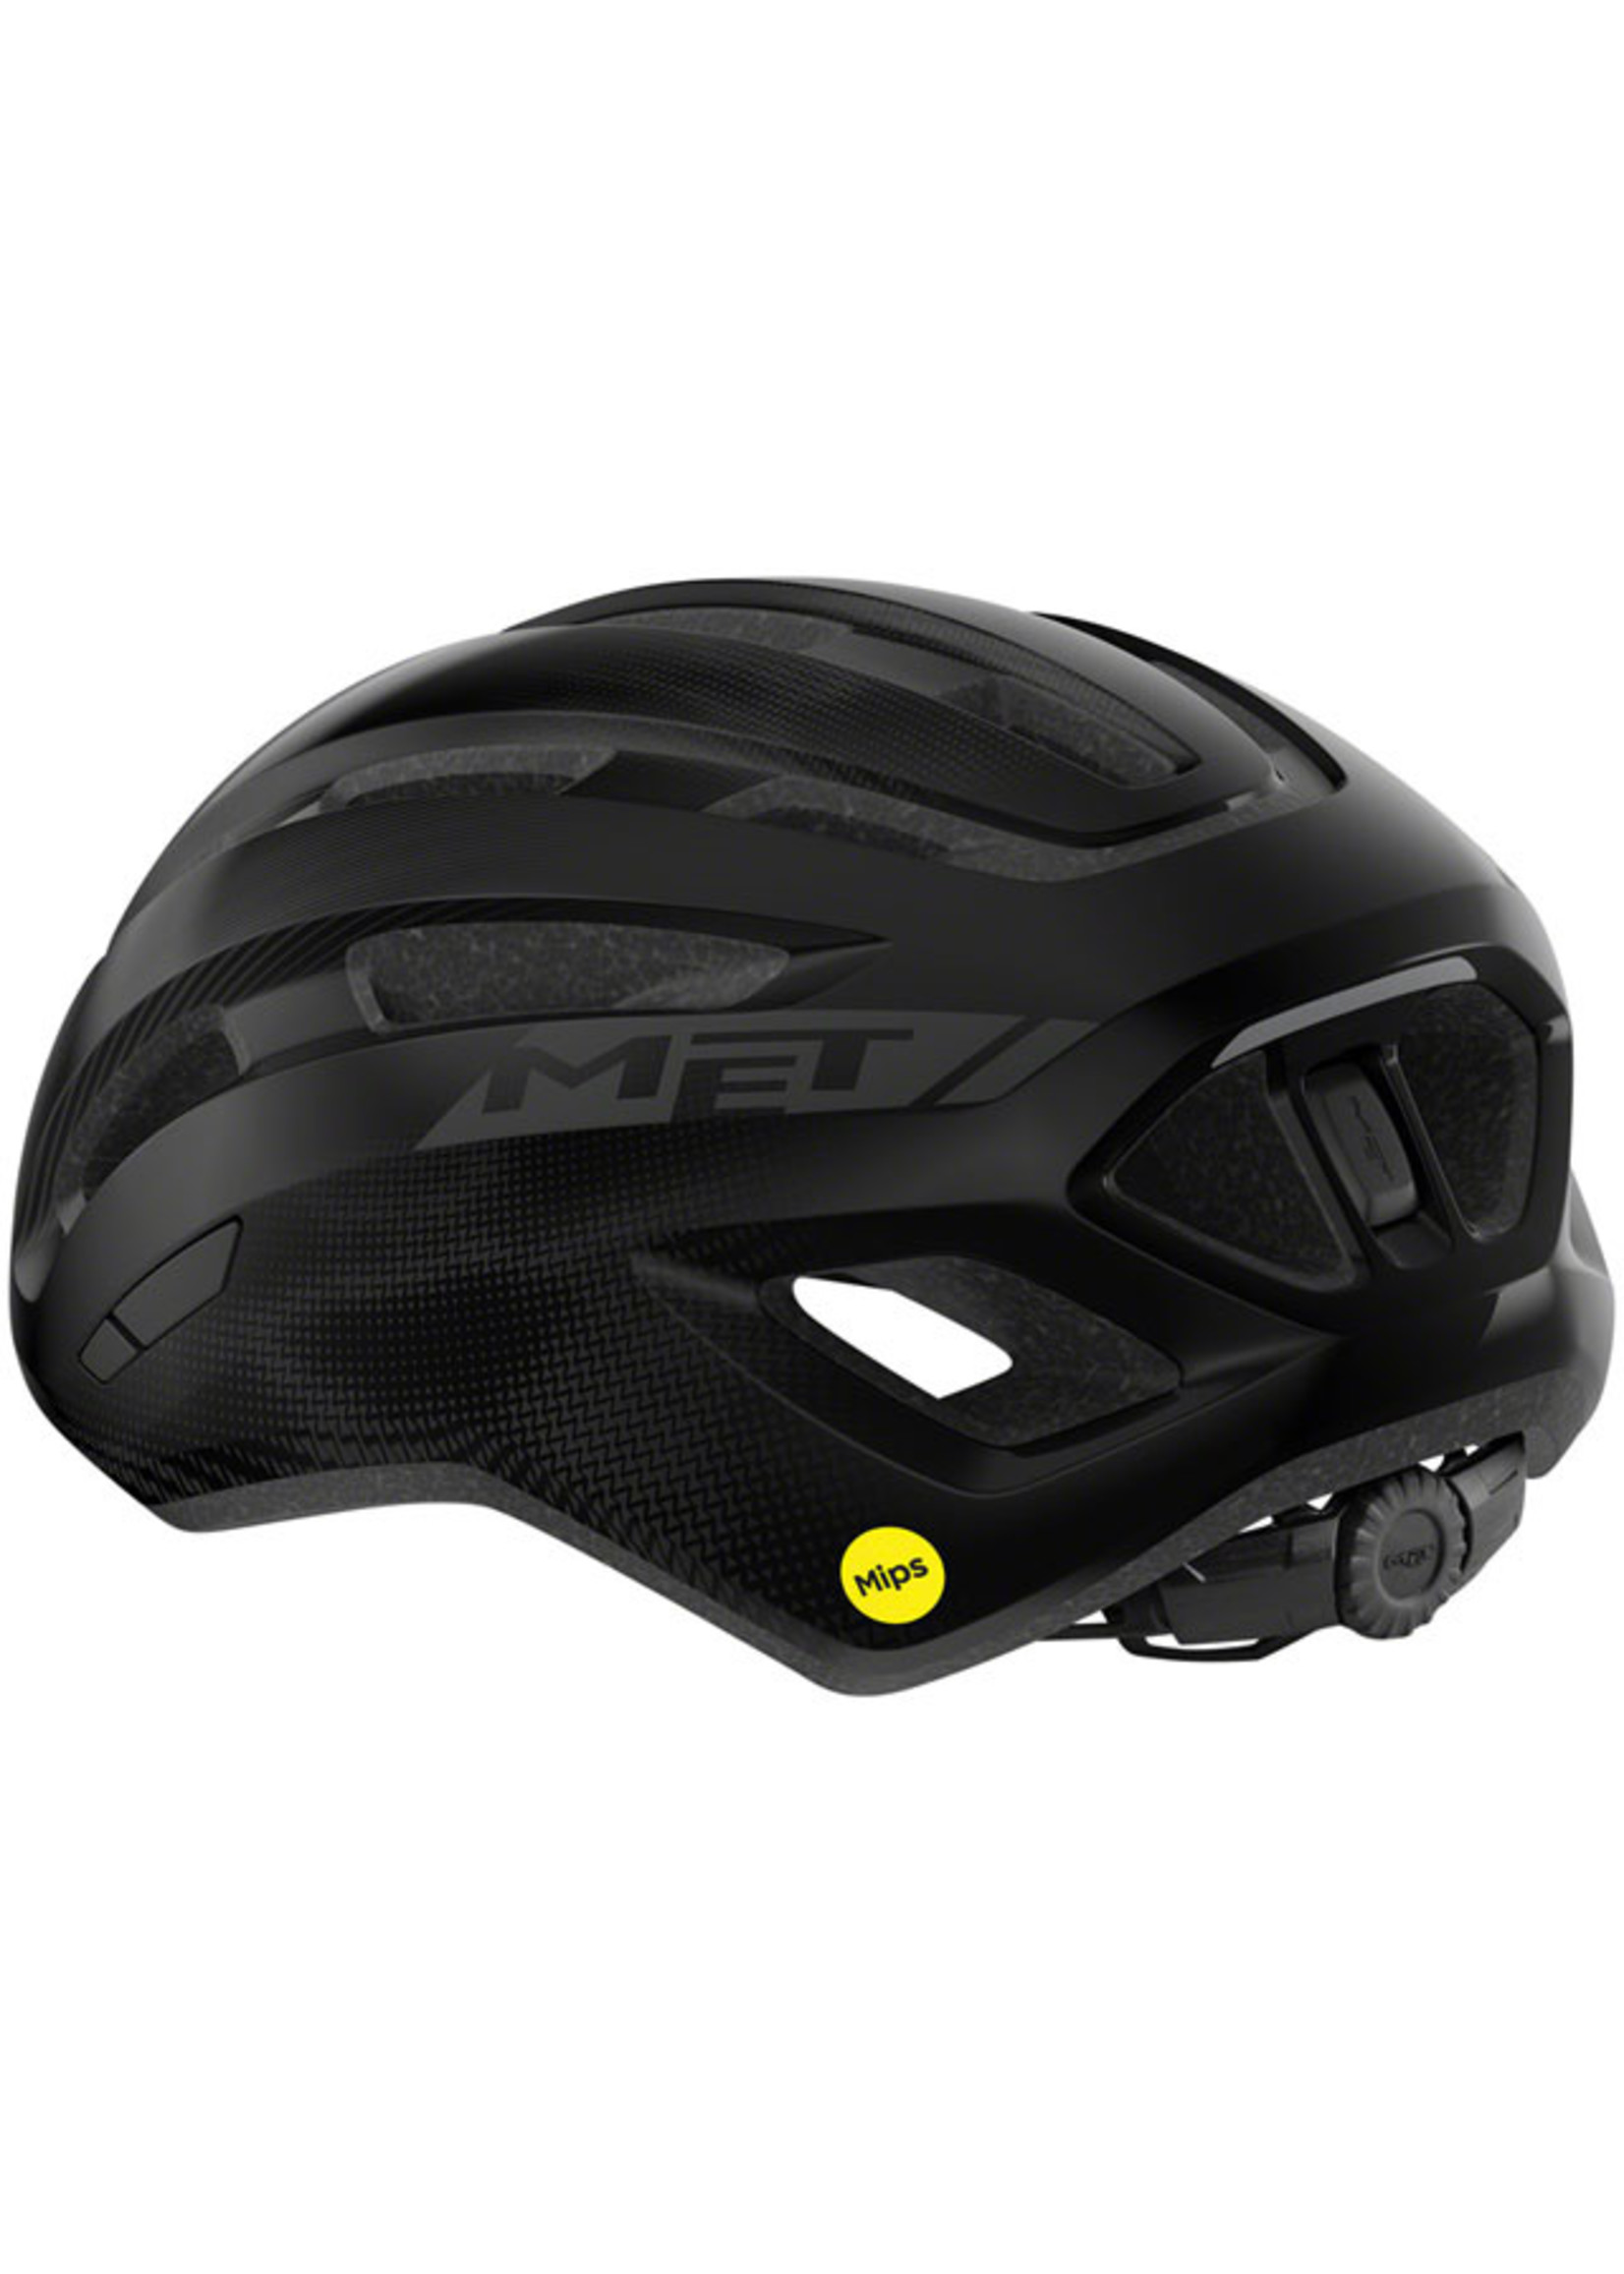 MET Helmets MET Miles MIPS Helmet - Black Glossy Small/Medium